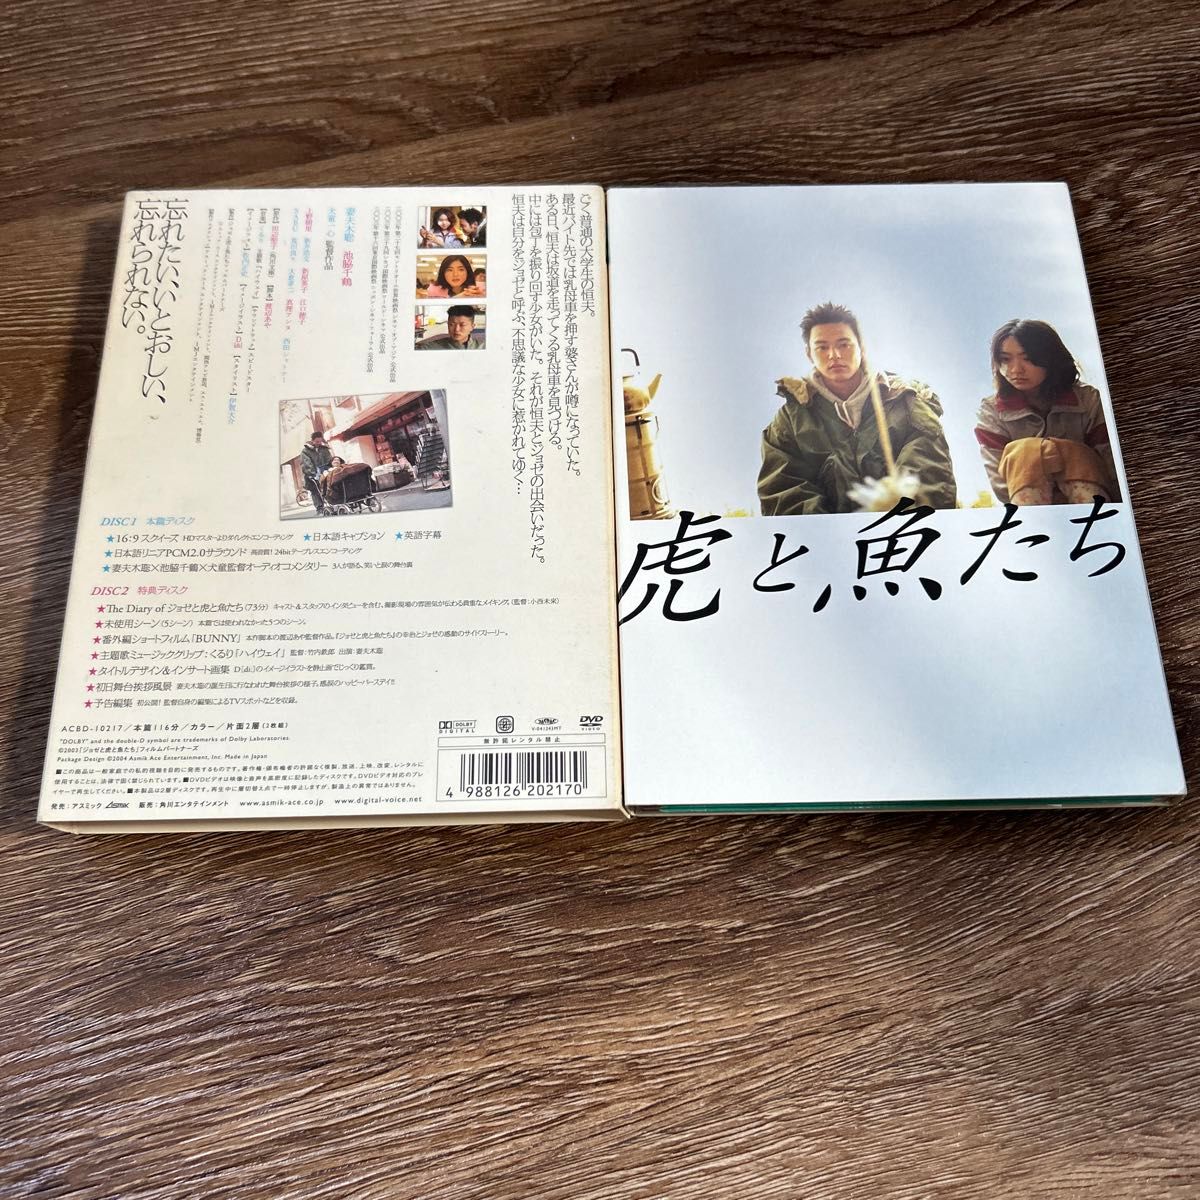 ジョゼと虎と魚たち 特別版 (初回限定生産2枚組) DVD